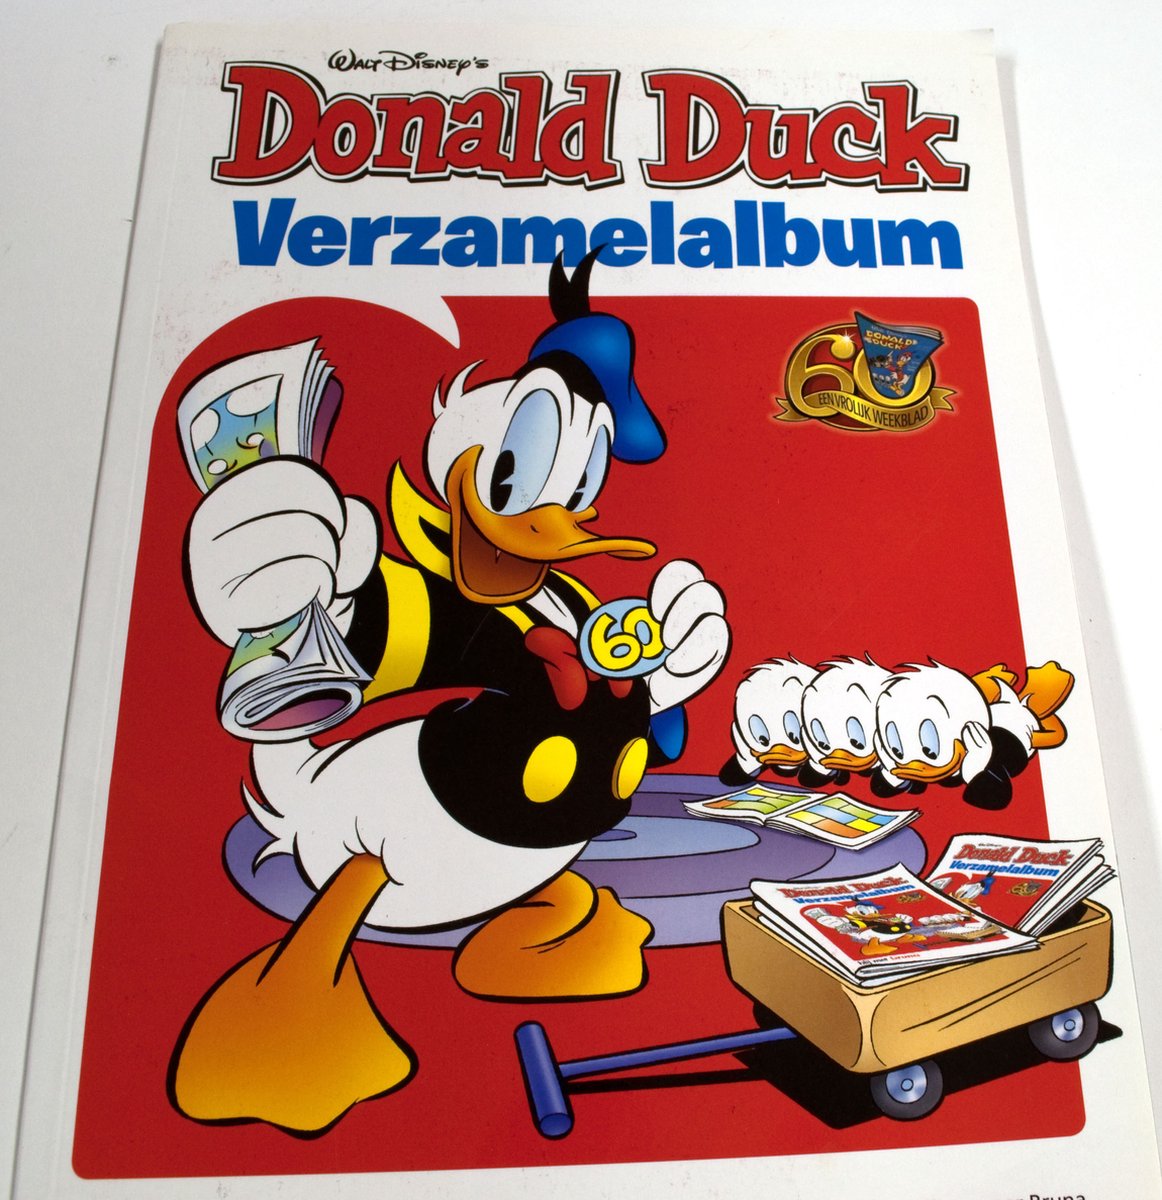 Spaaralbum / Donald Duck